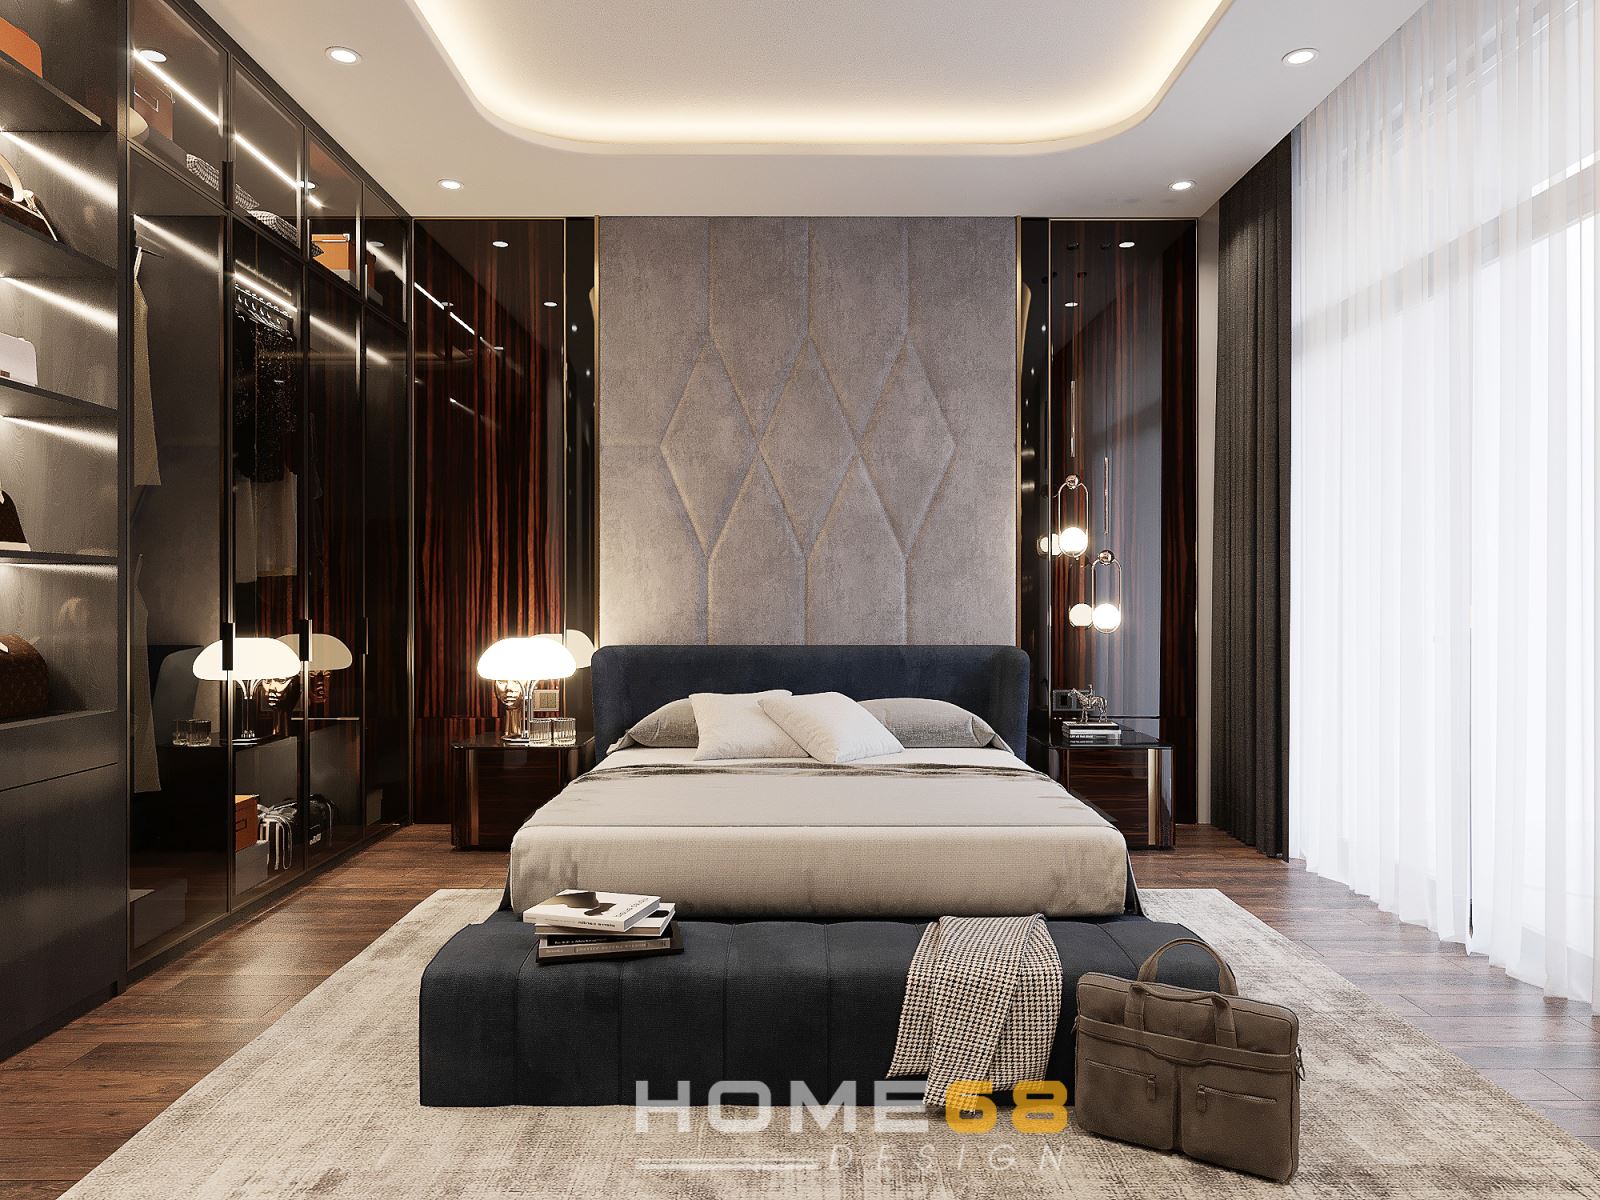 Thiết kế nội thất phòng ngủ của HOME68 đảm bảo đủ công năng, thẩm mỹ và yếu tố phong thủy